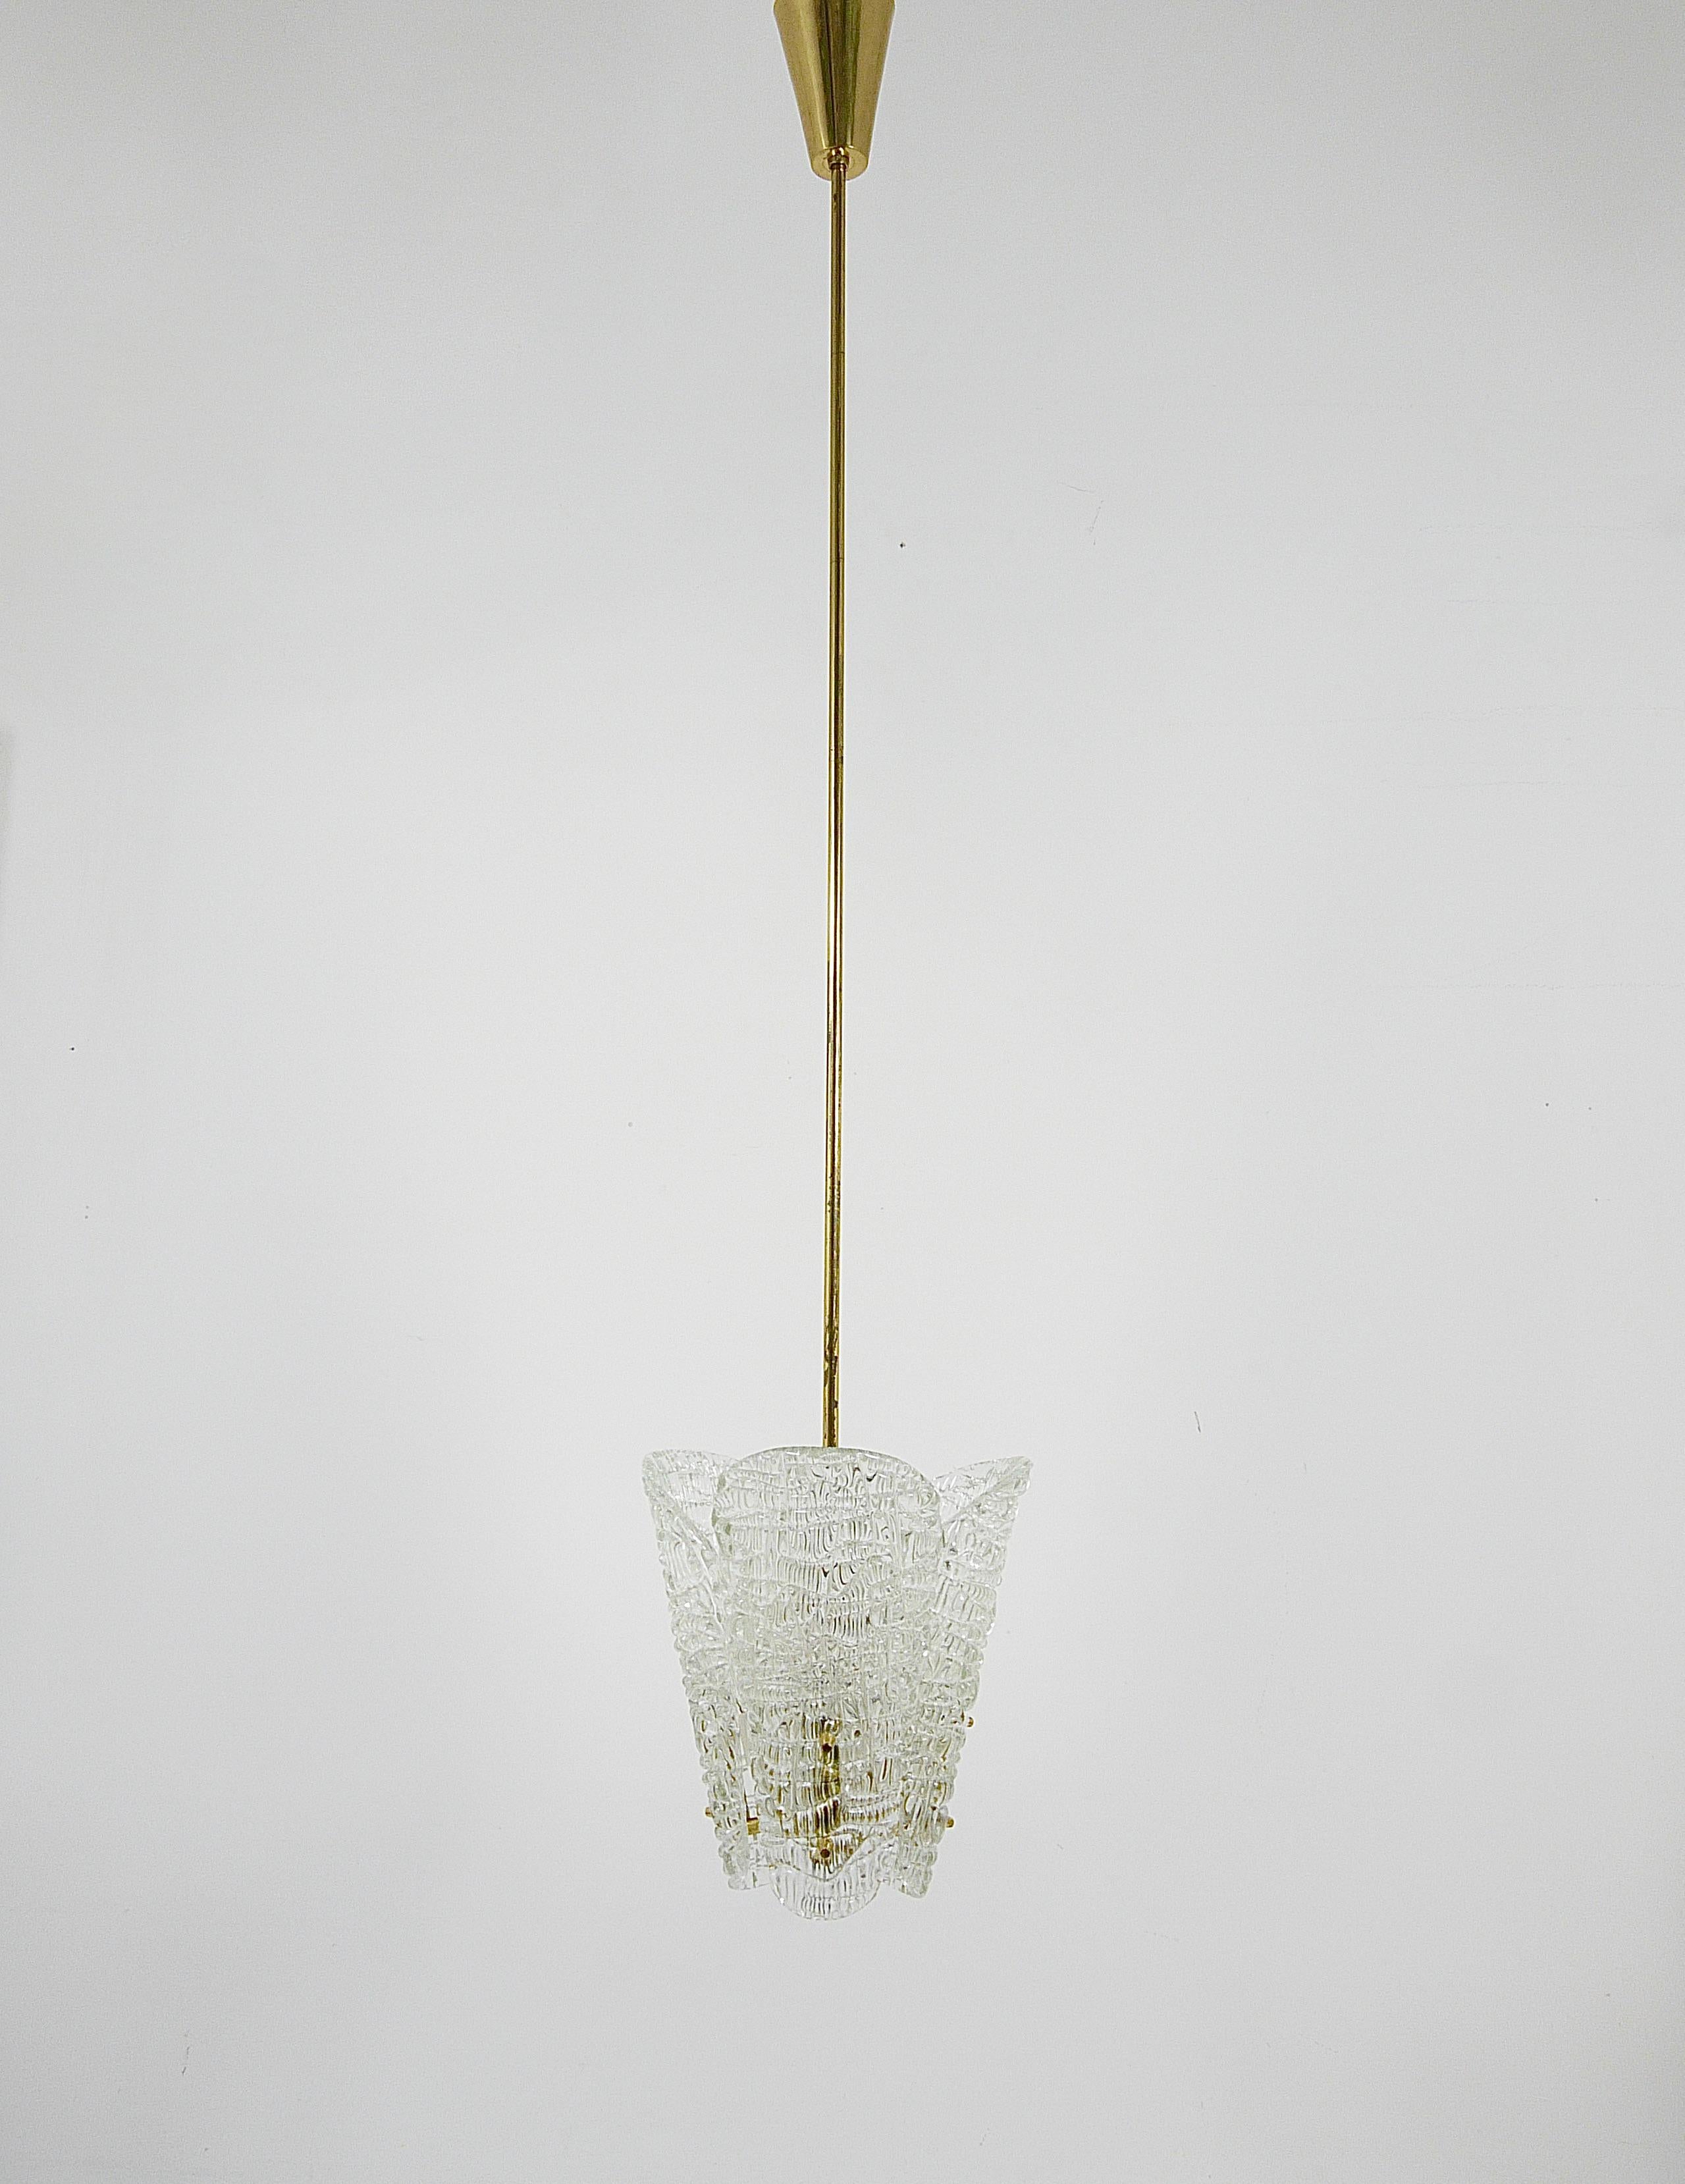 Voici un charmant petit lustre en laiton de J.AT&T. Kalmar de Vienne, en Autriche, fabriqué dans les années 1950. Cette magnifique pièce présente trois abat-jour en verre texturé en forme de cuillère élégante, gracieusement suspendus à des ferrures